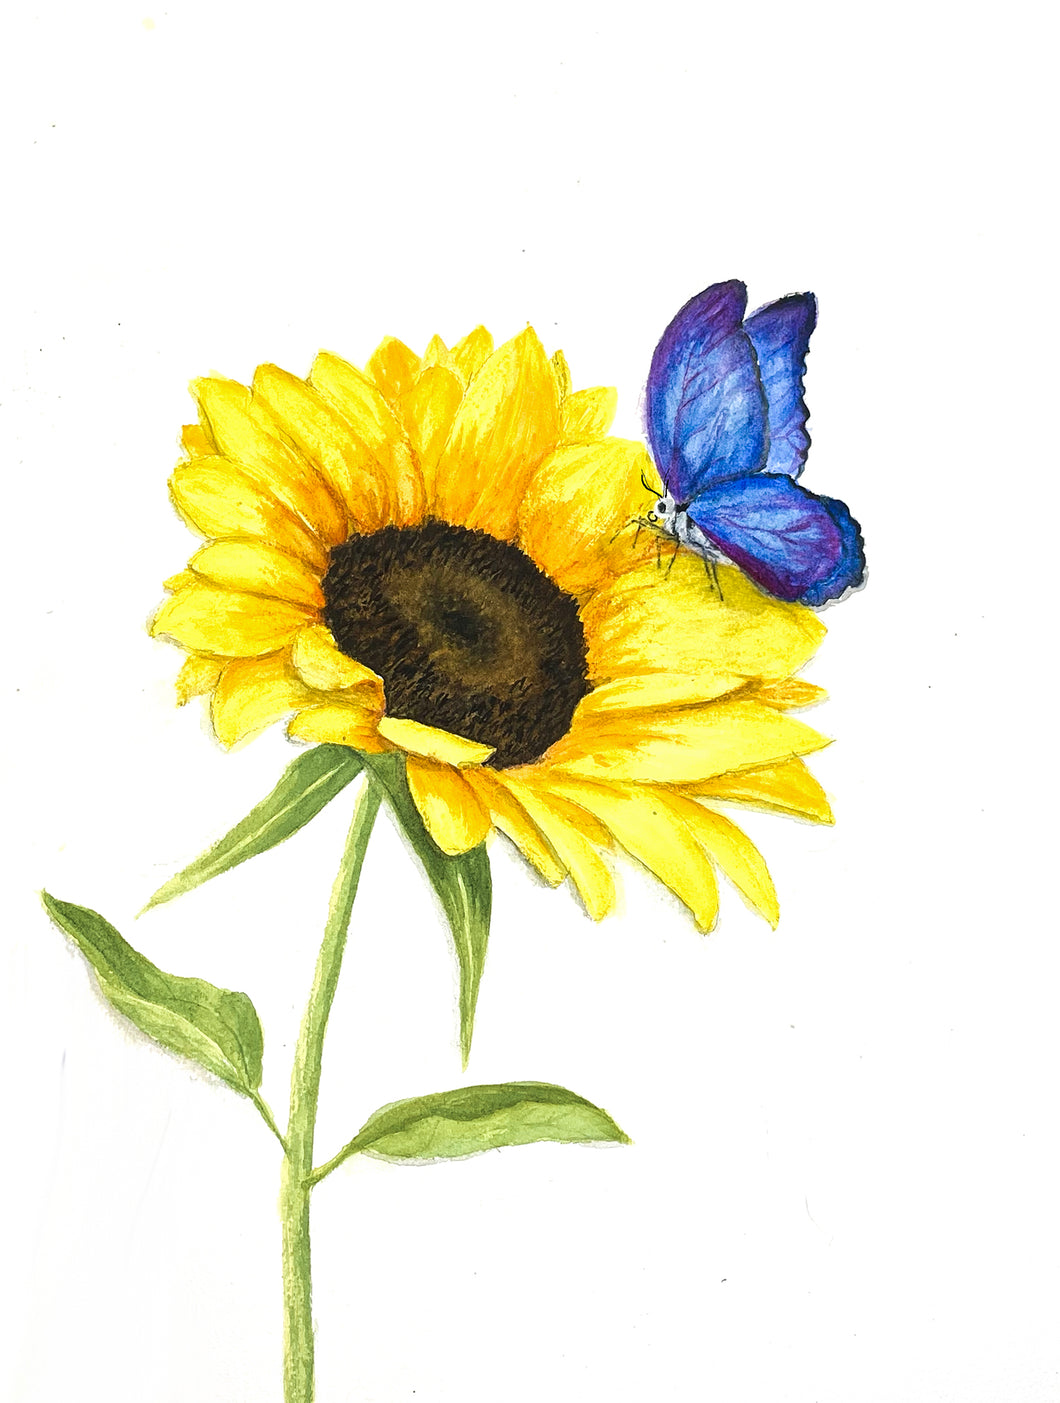 Sunflower for Ukraine